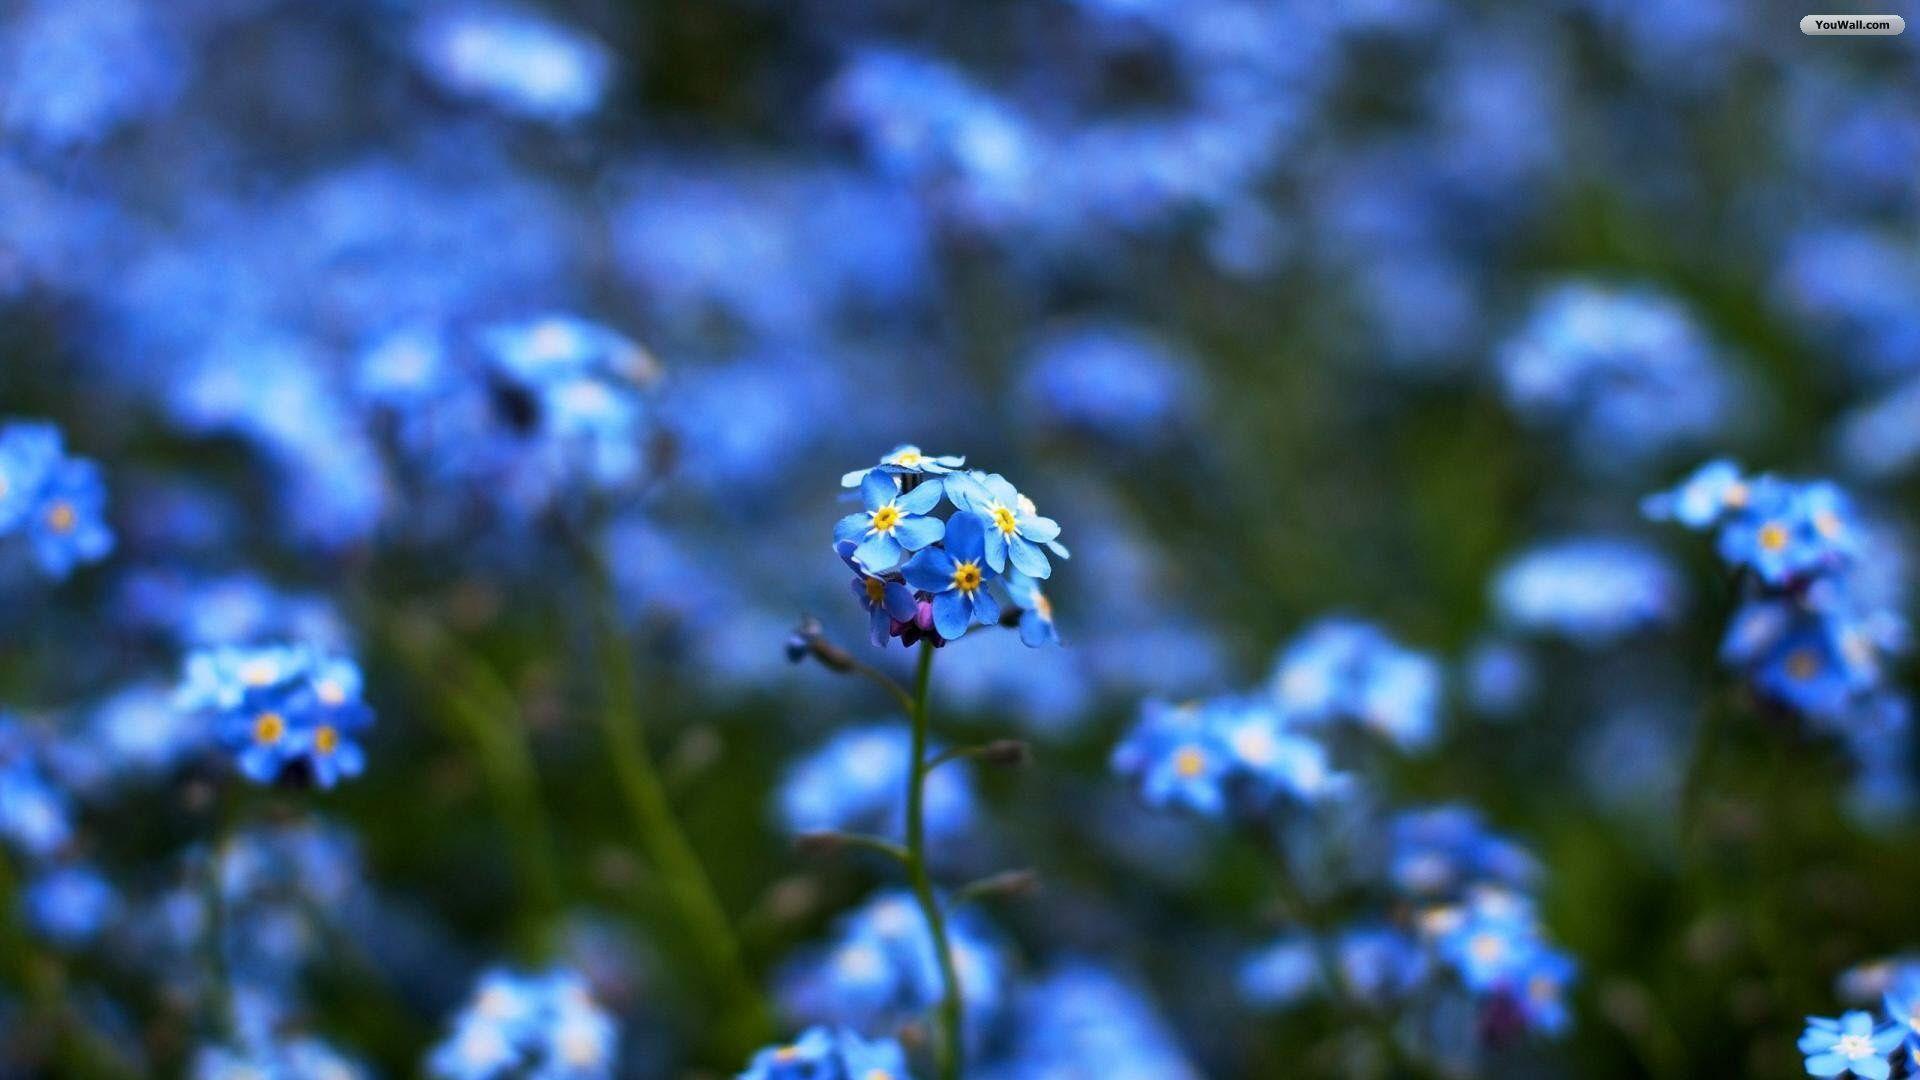 Blue Flowers Wallpaper: Blue Flowers Wallpaper